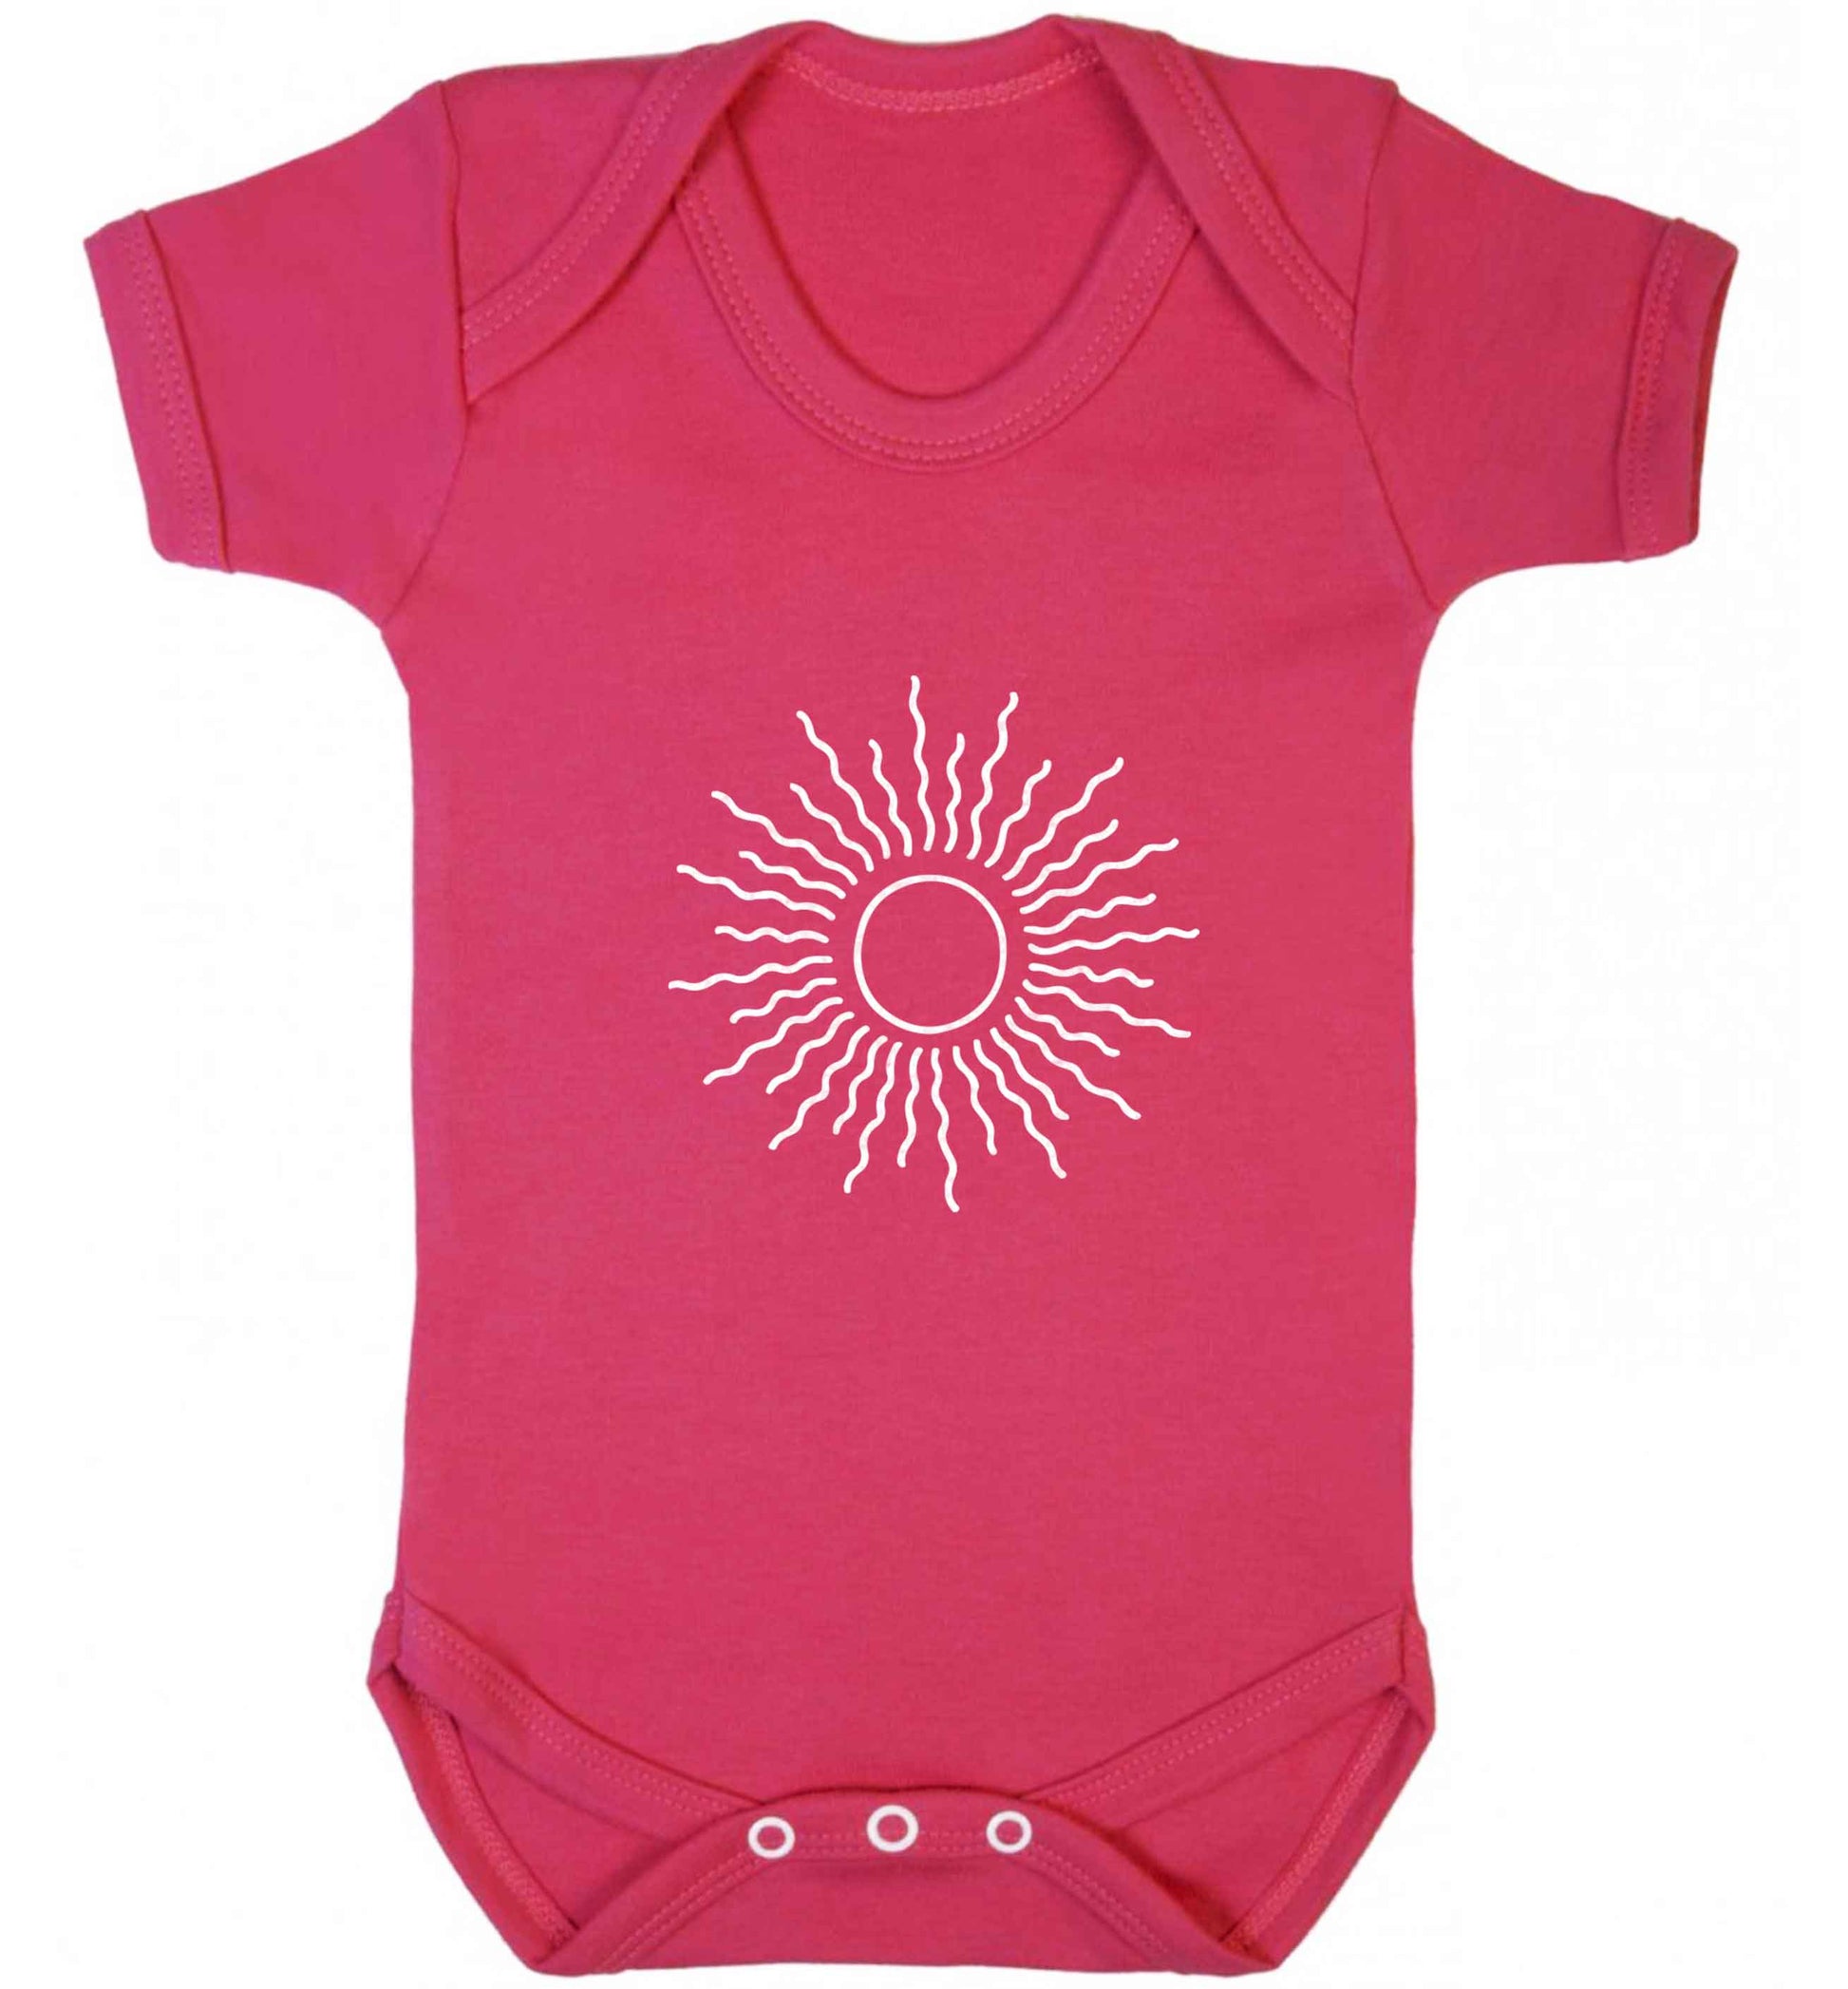 Sun illustration baby vest dark pink 18-24 months